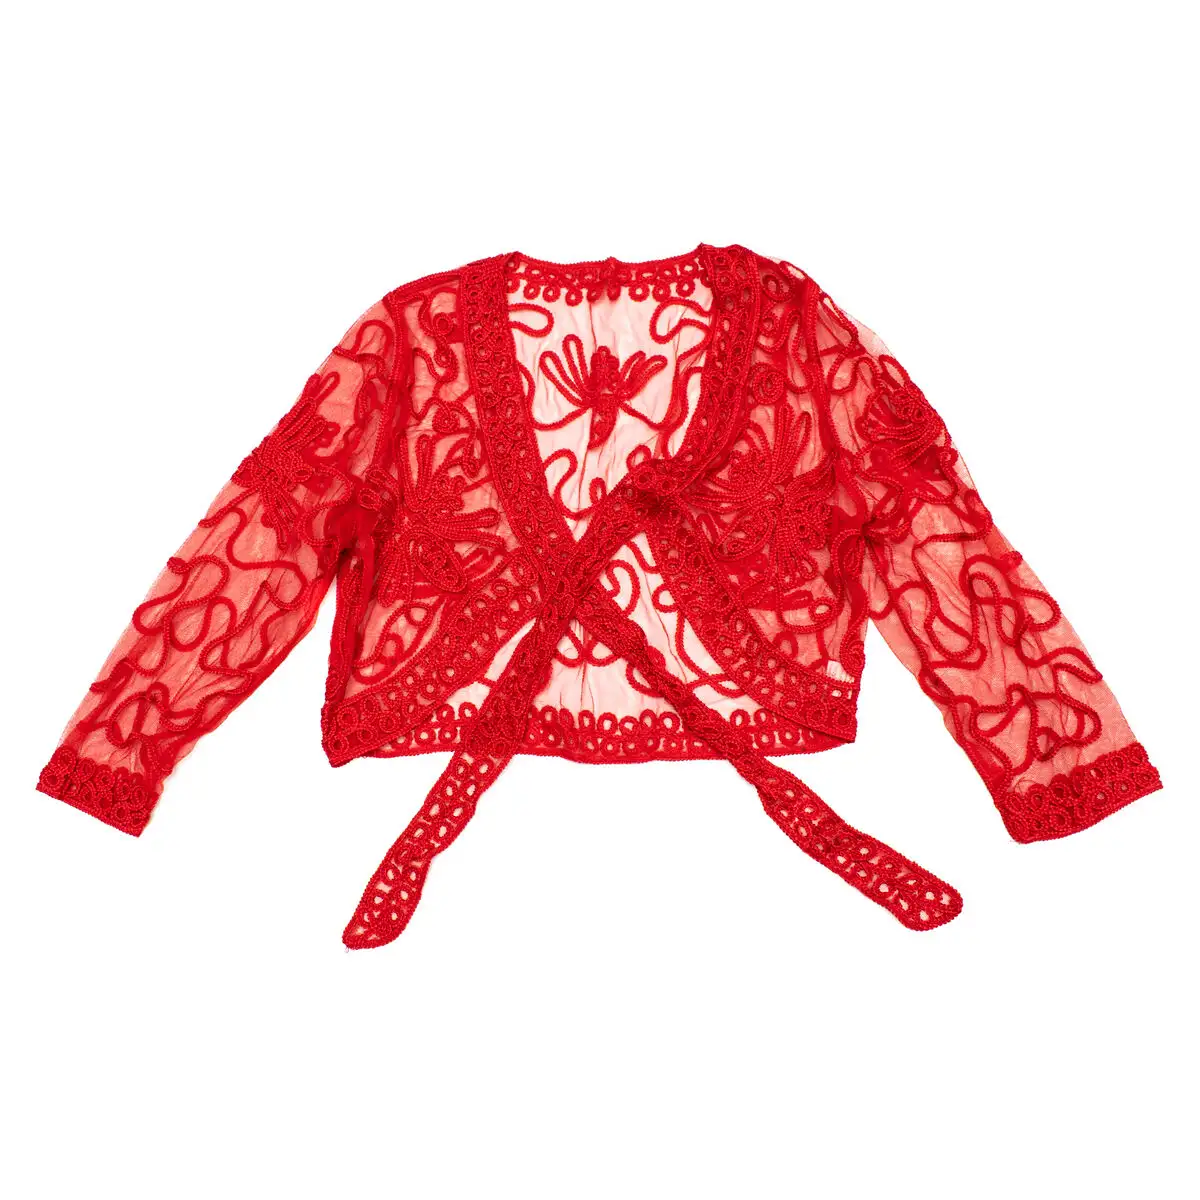 Veste ch08r flamenco et sevillanes rouge m_9754. DIAYTAR SENEGAL - Où la Tradition Renouvelée Rencontre l'Innovation. Explorez notre gamme de produits qui fusionnent l'héritage culturel avec les besoins contemporains.